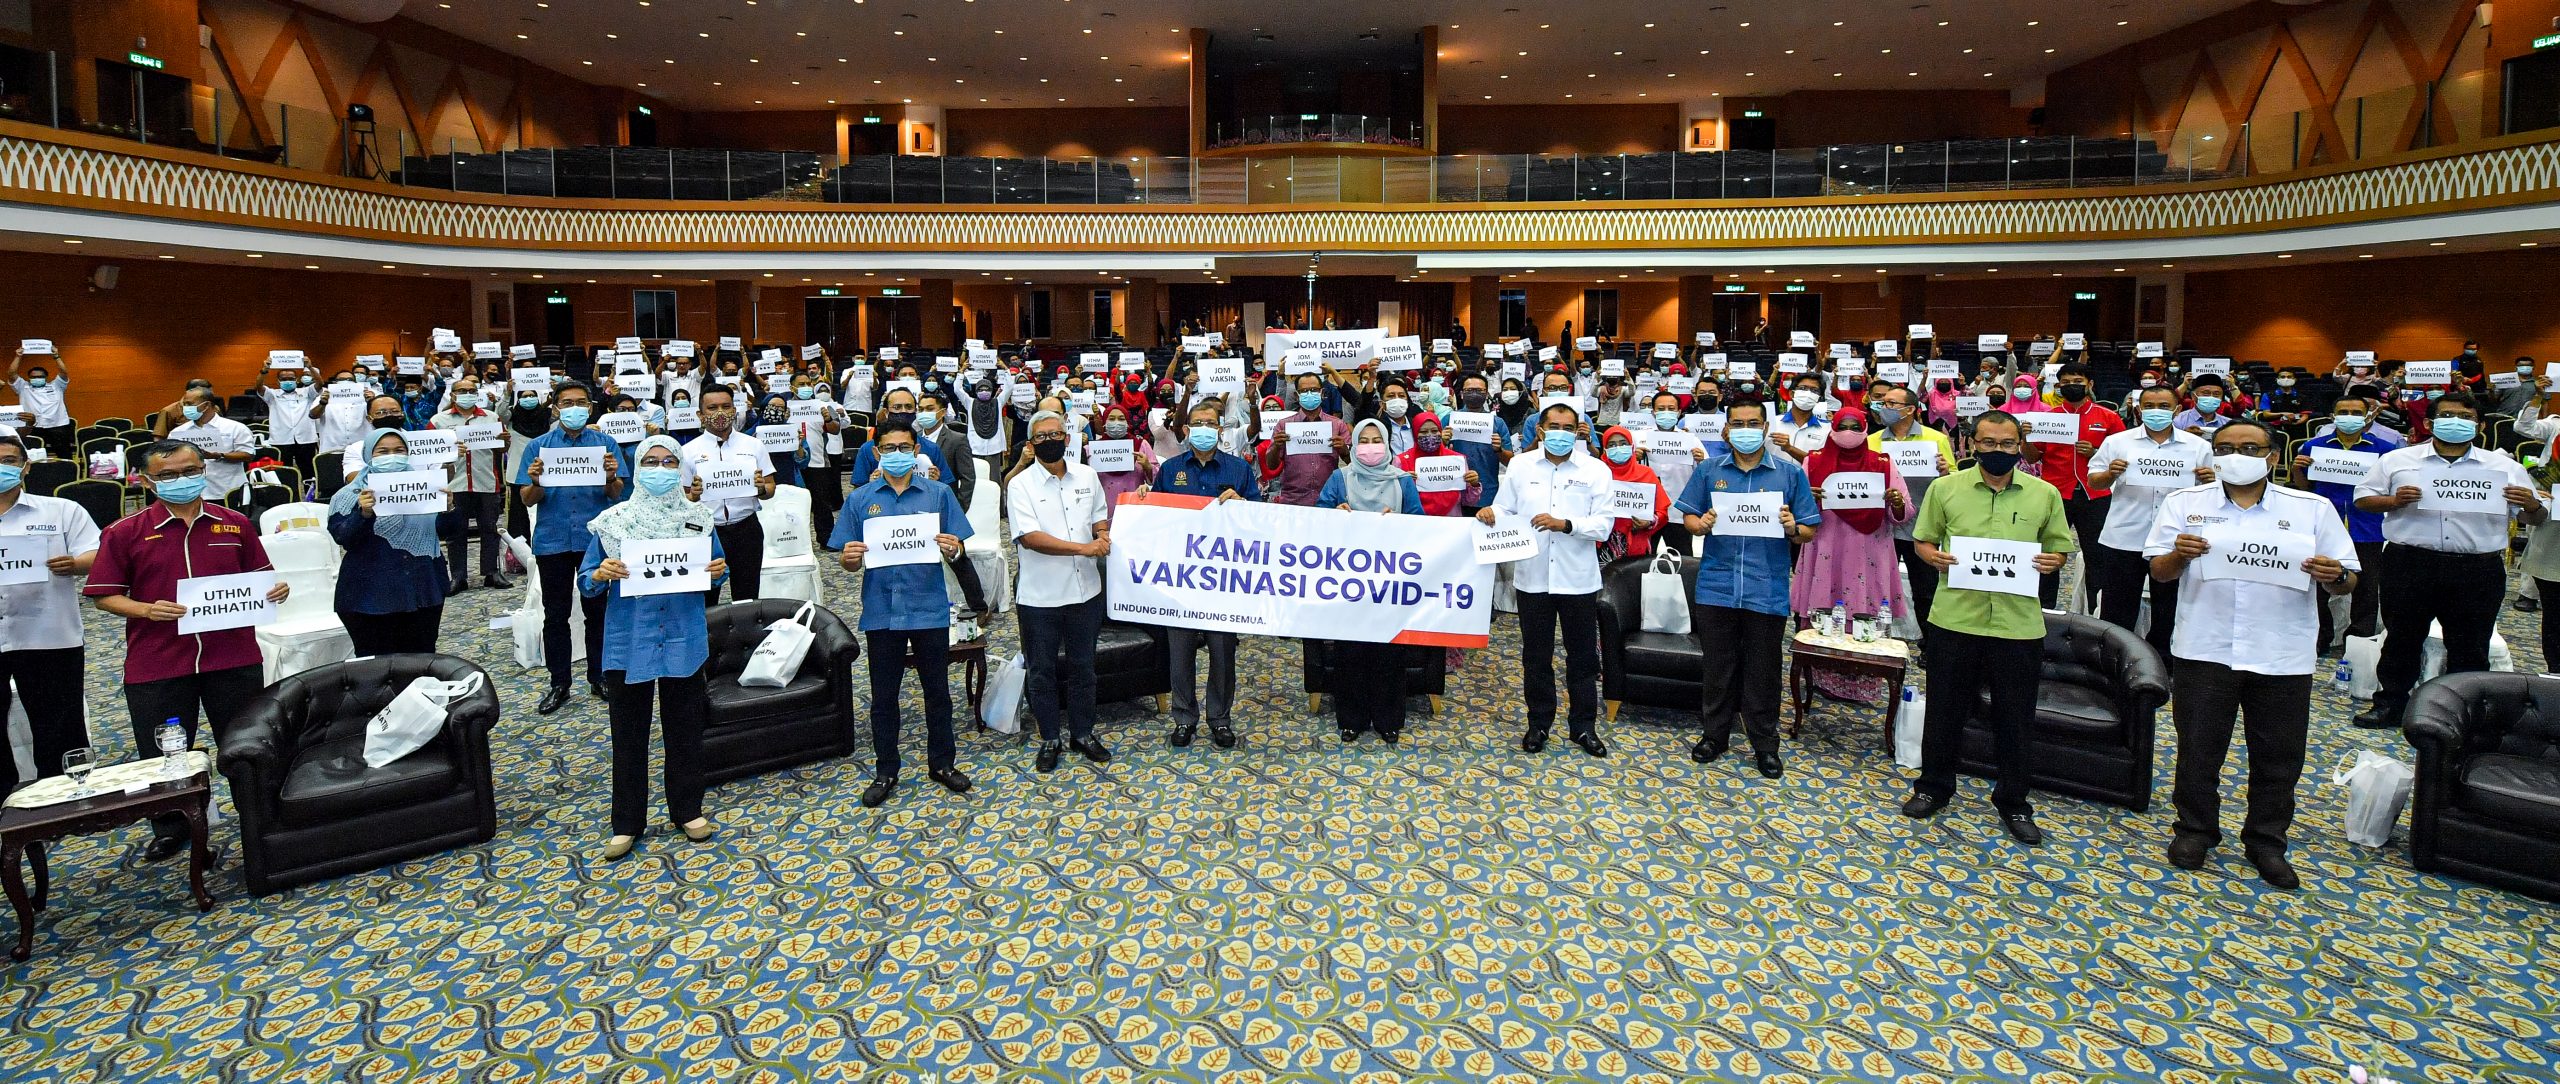 Noraini seru rakyat Malaysia dapatkan suntikan vaksin, sokong usaha kerajaan bendung Covid-19